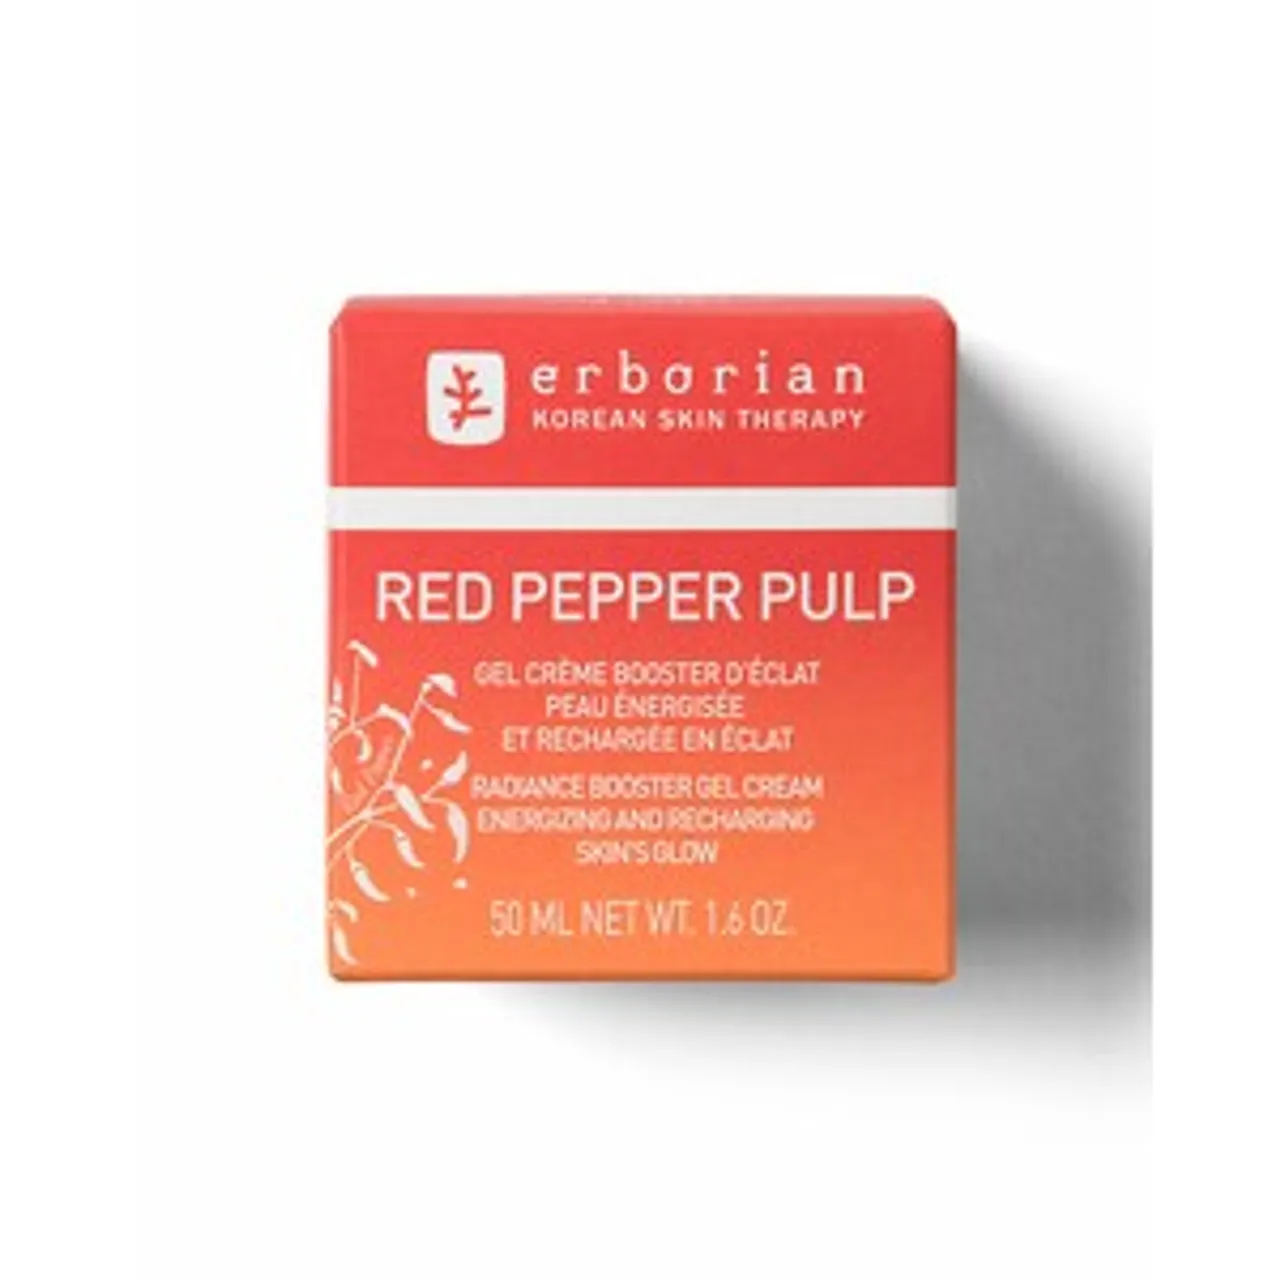 Erborian Red Pepper Pulp UITSTRALINGSGEL BEHANDELING MET ZOETE CHILI